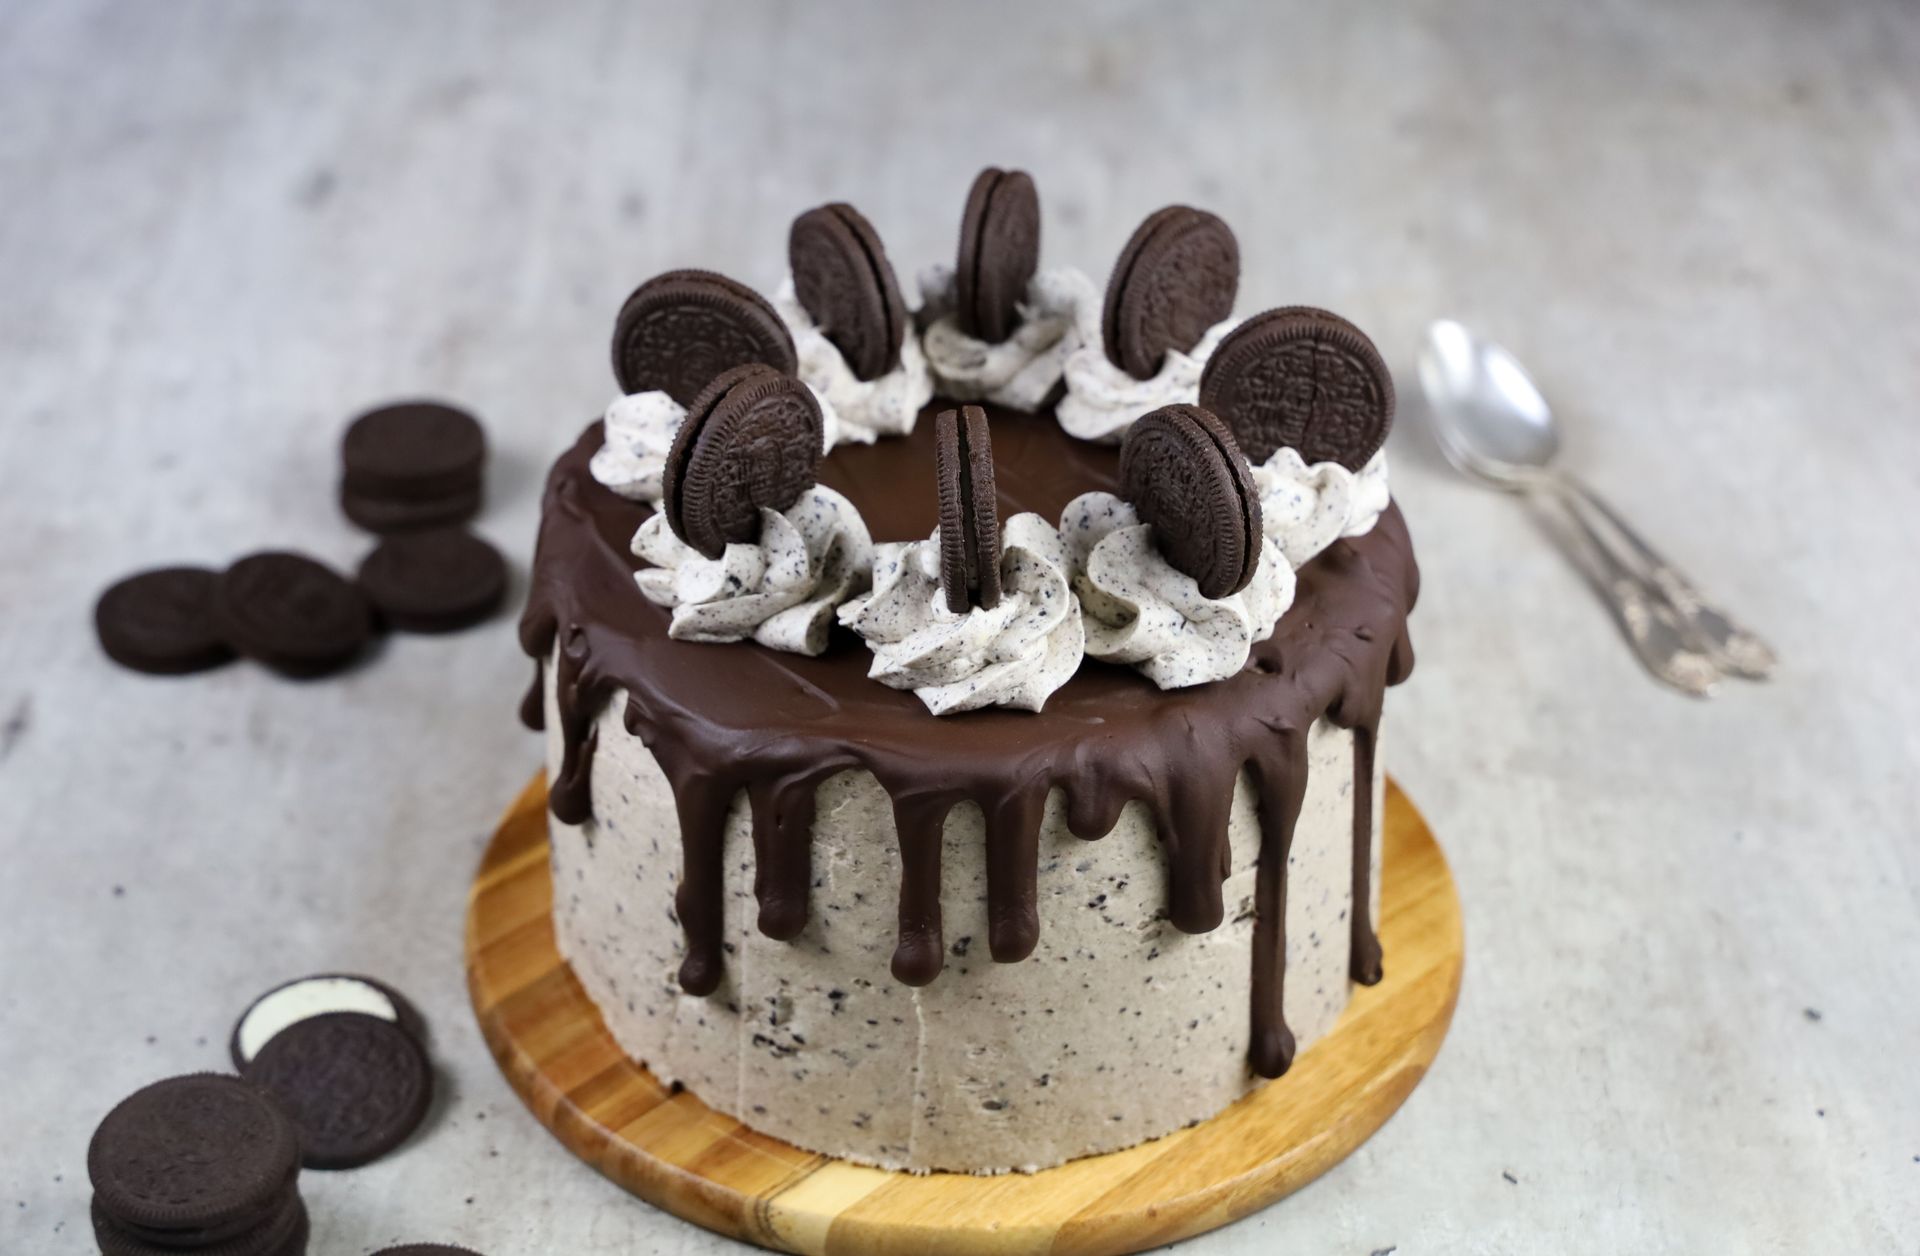 τούρτα σοκολάτα με μπισκότα oreo.jpg